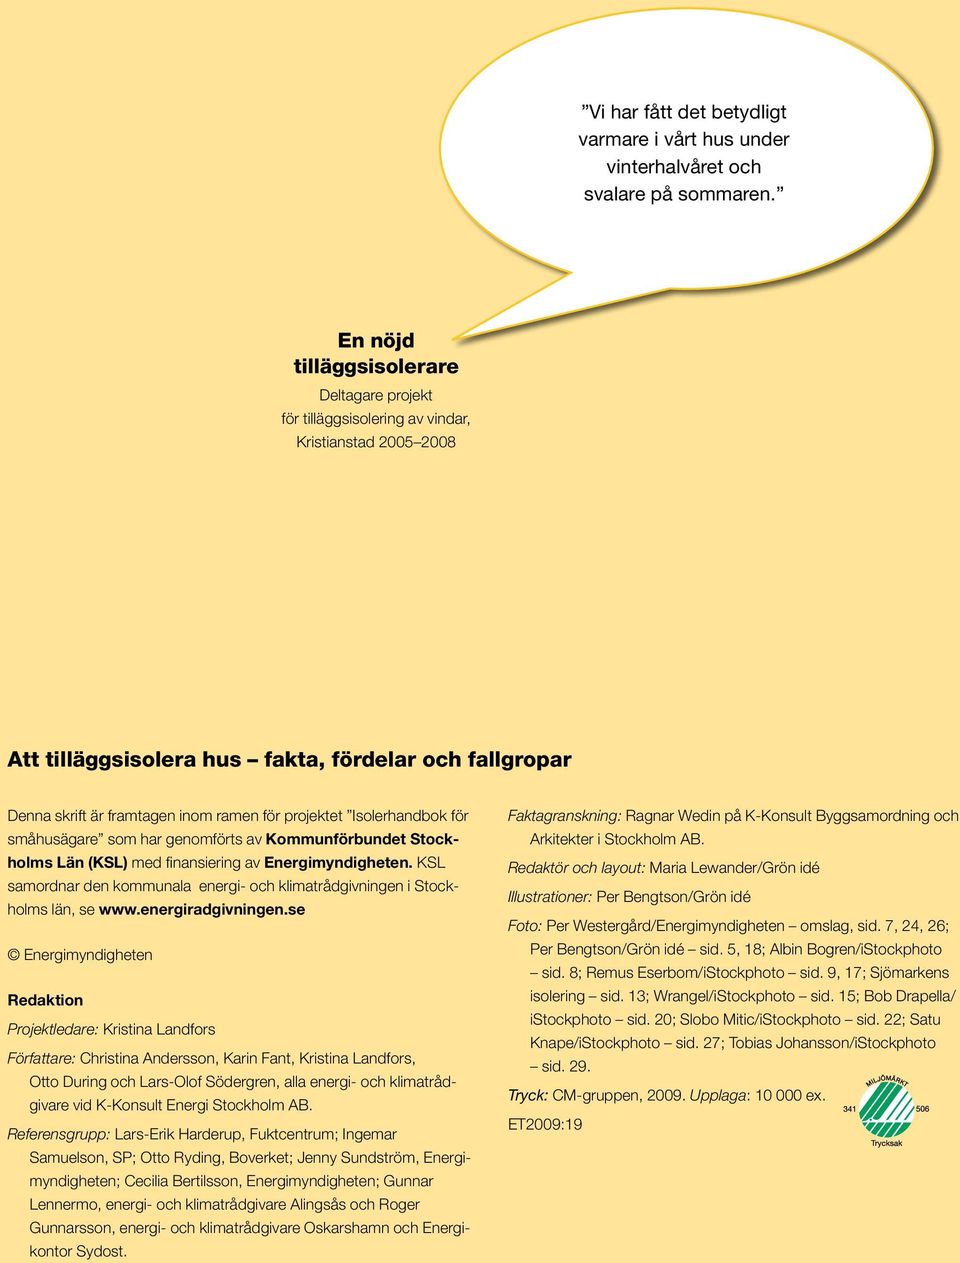 projektet Isolerhandbok för småhusägare som har genomförts av Kommunförbundet Stockholms Län (KSL) med finansiering av Energimyndigheten.